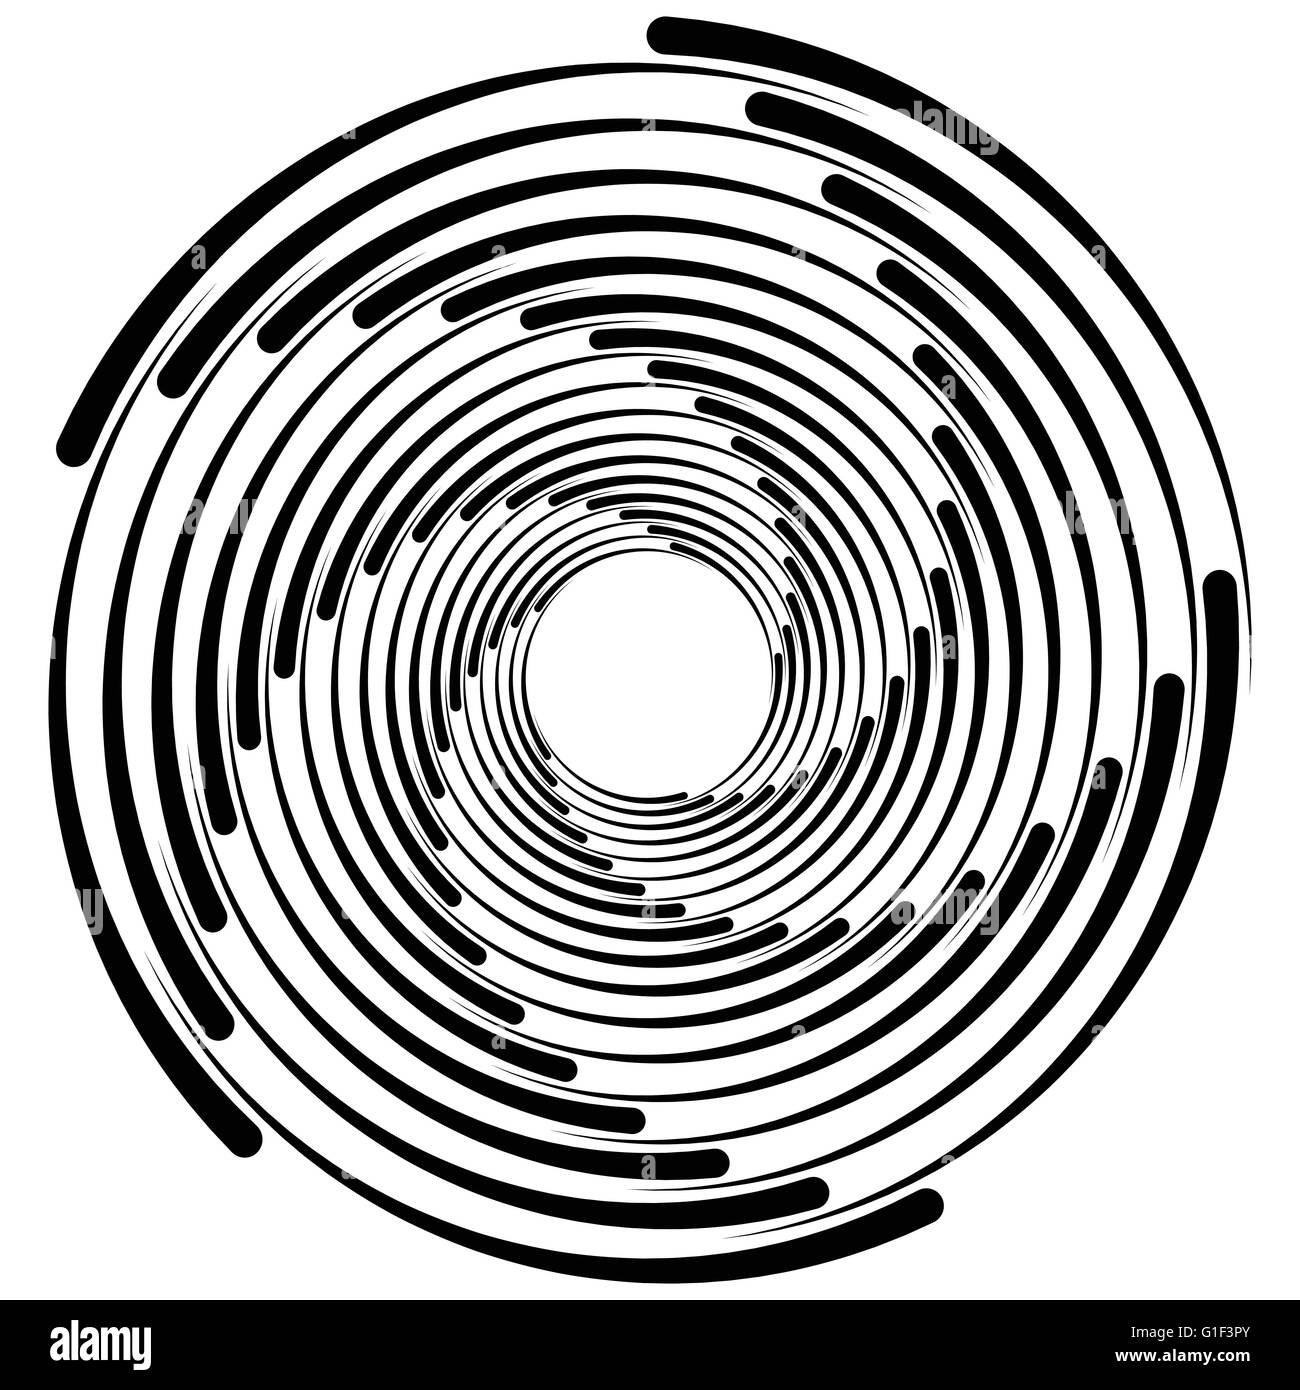 Spirale, Quirl, Strudel, Wirbel Formen. Abstrakte Elemente  Stock-Vektorgrafik - Alamy